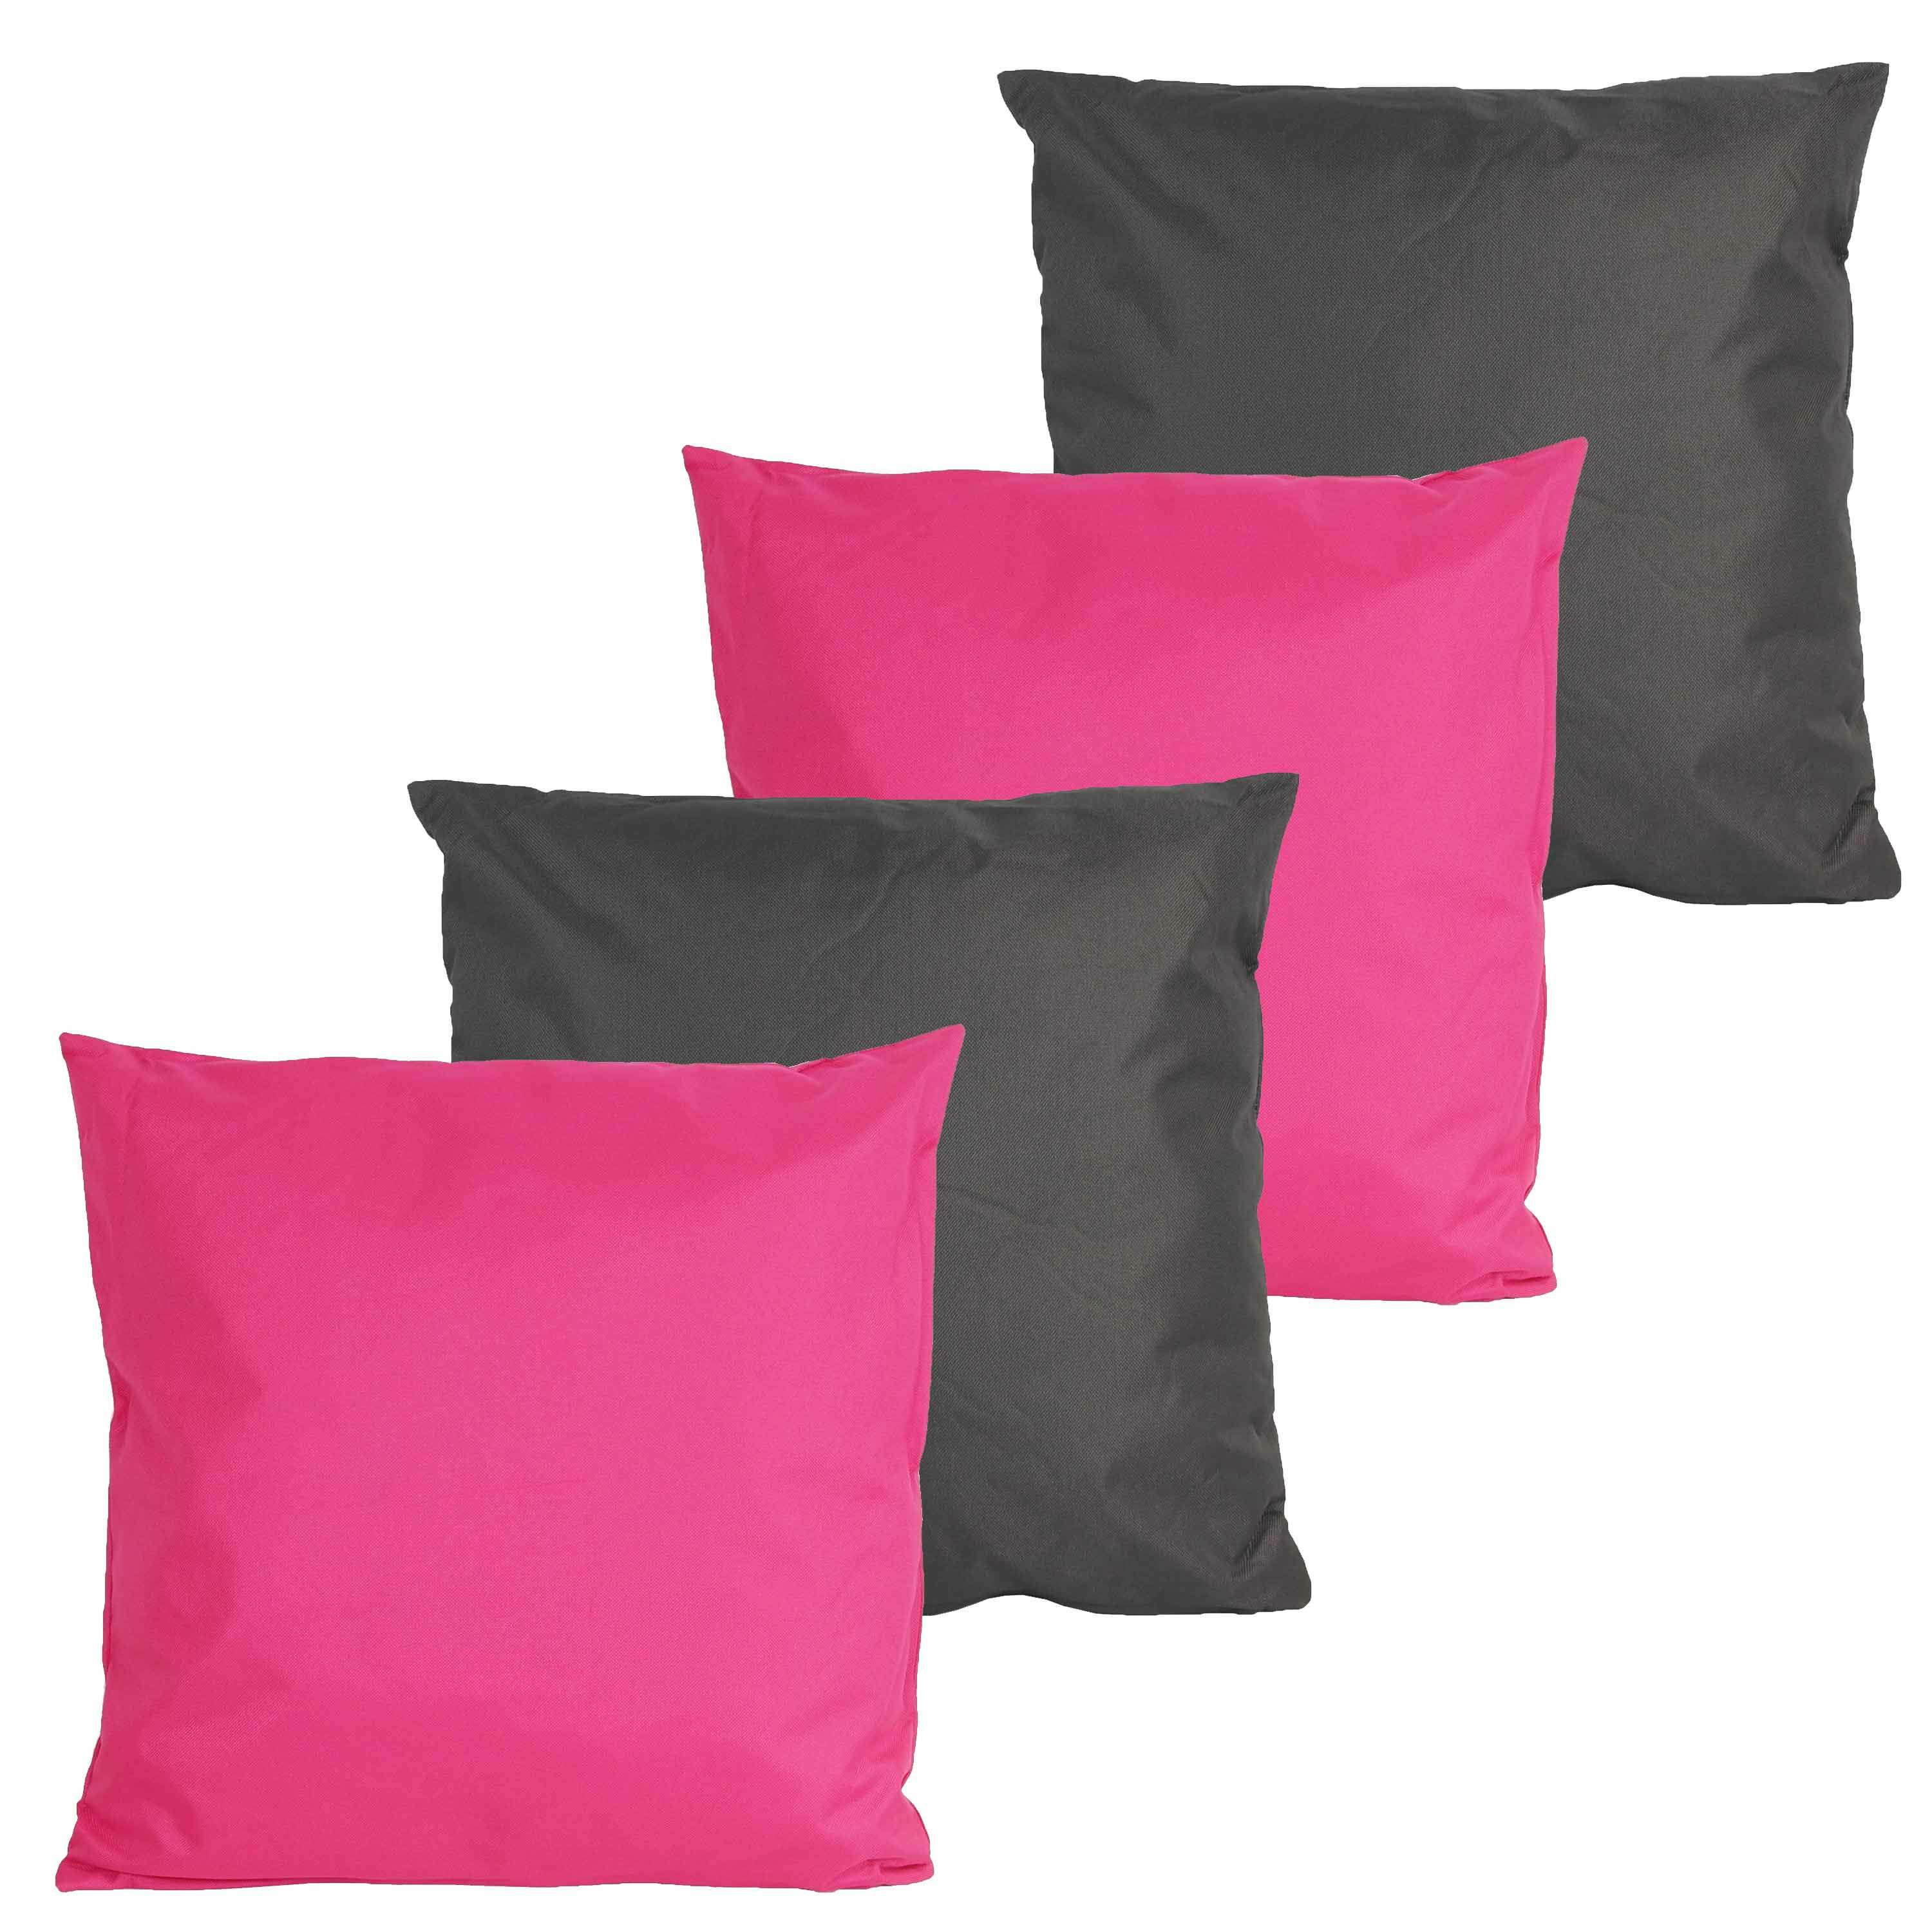 Bank-Tuin kussens set voor binnen-buiten 4x stuks fuchsia roze-antraciet grijs 45 x 45 cm